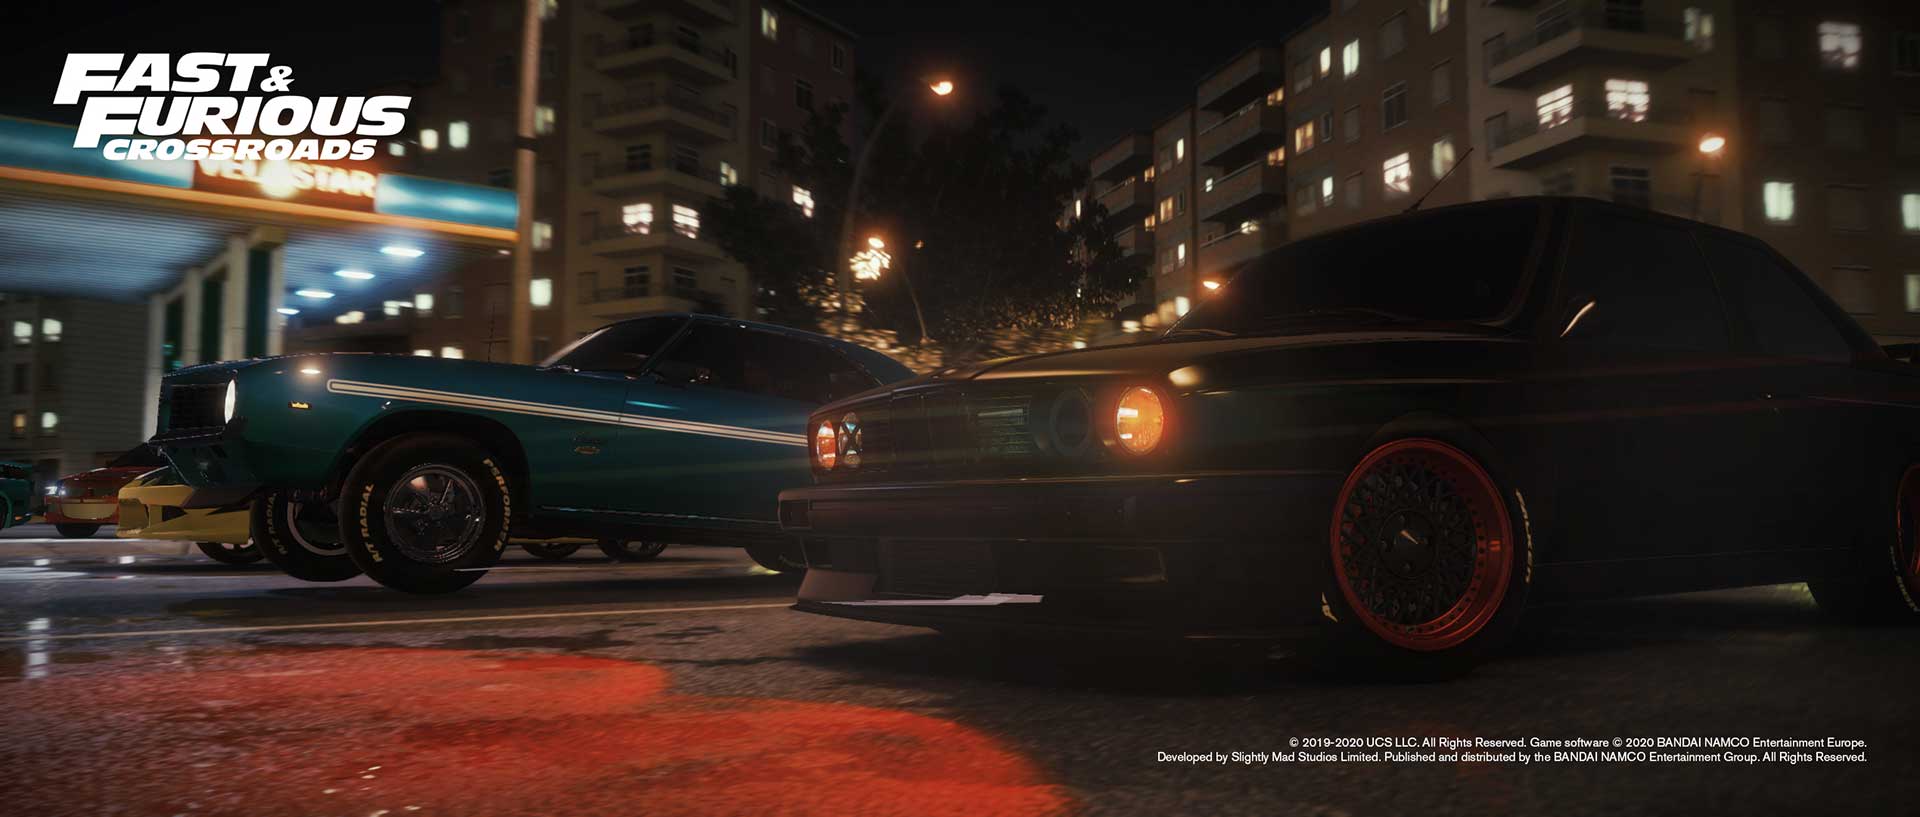 Fast & Furious Crossroads скриншот (фото)